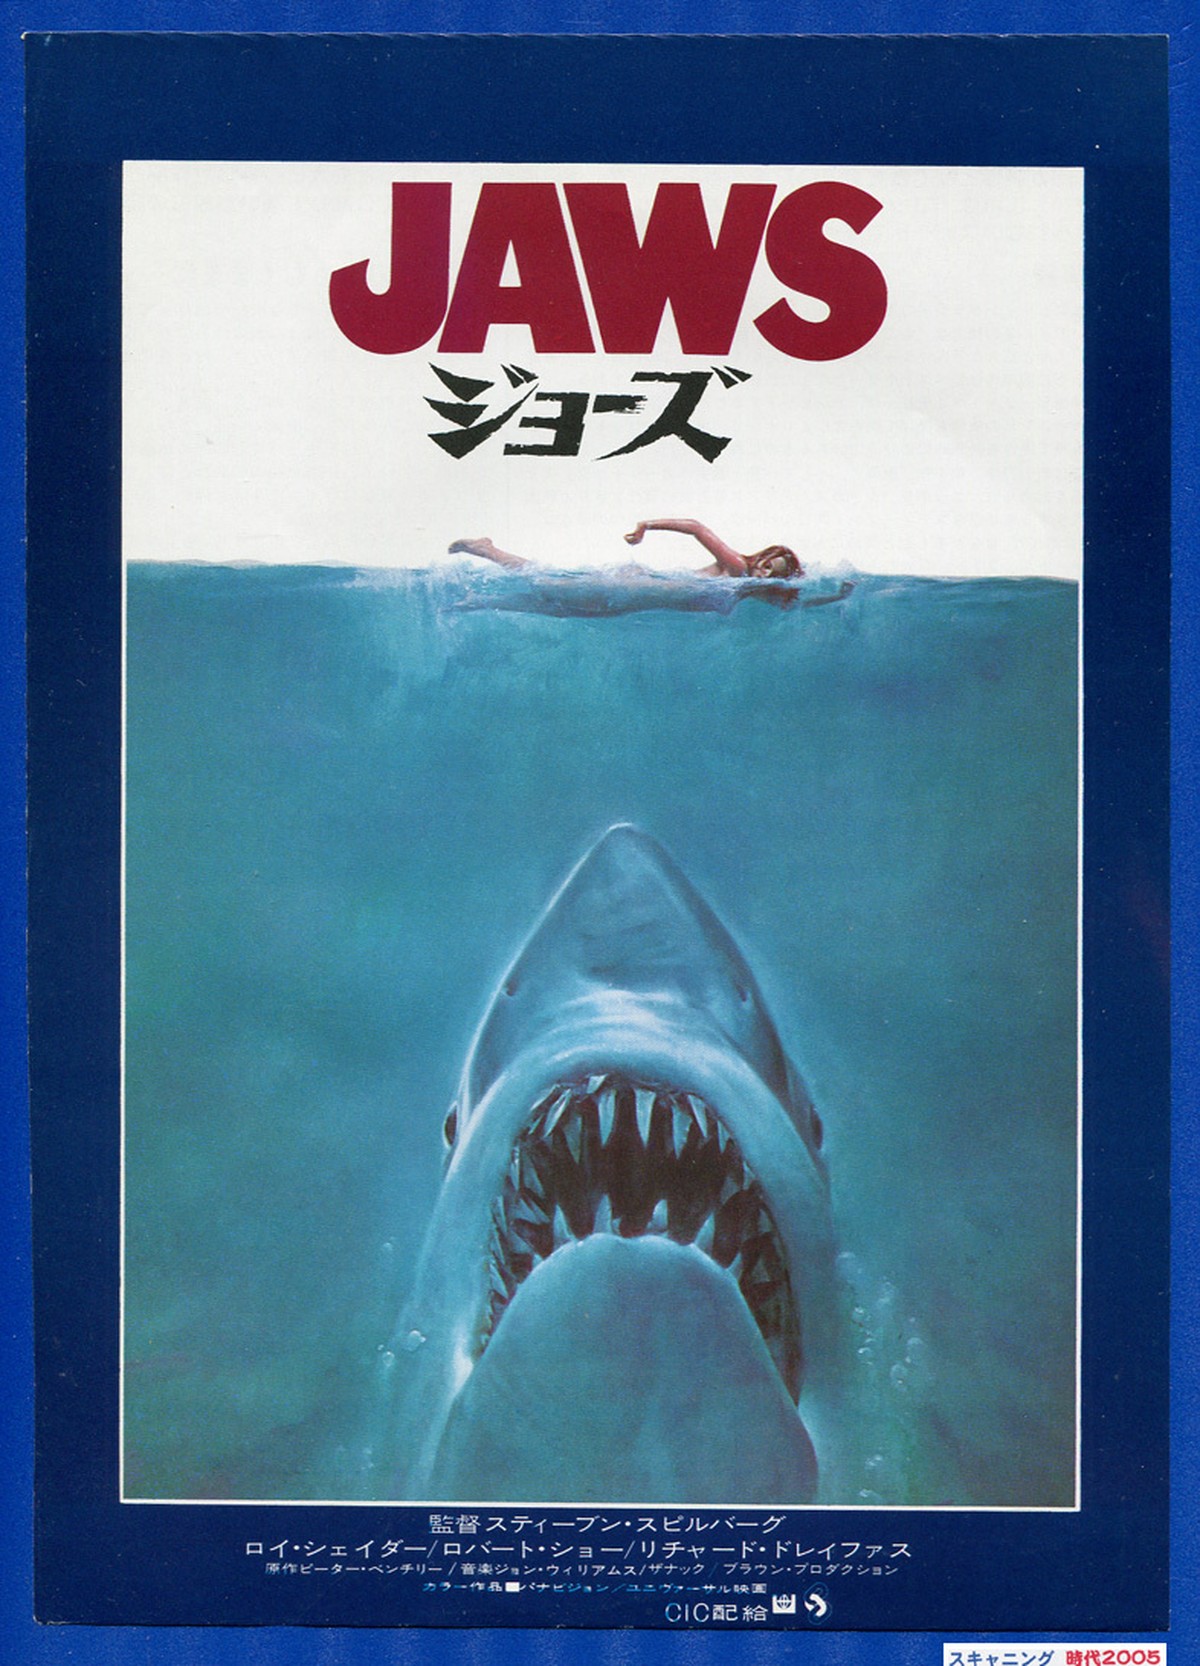 E Jaws ジョーズ 映画チラシ販売 大辞典